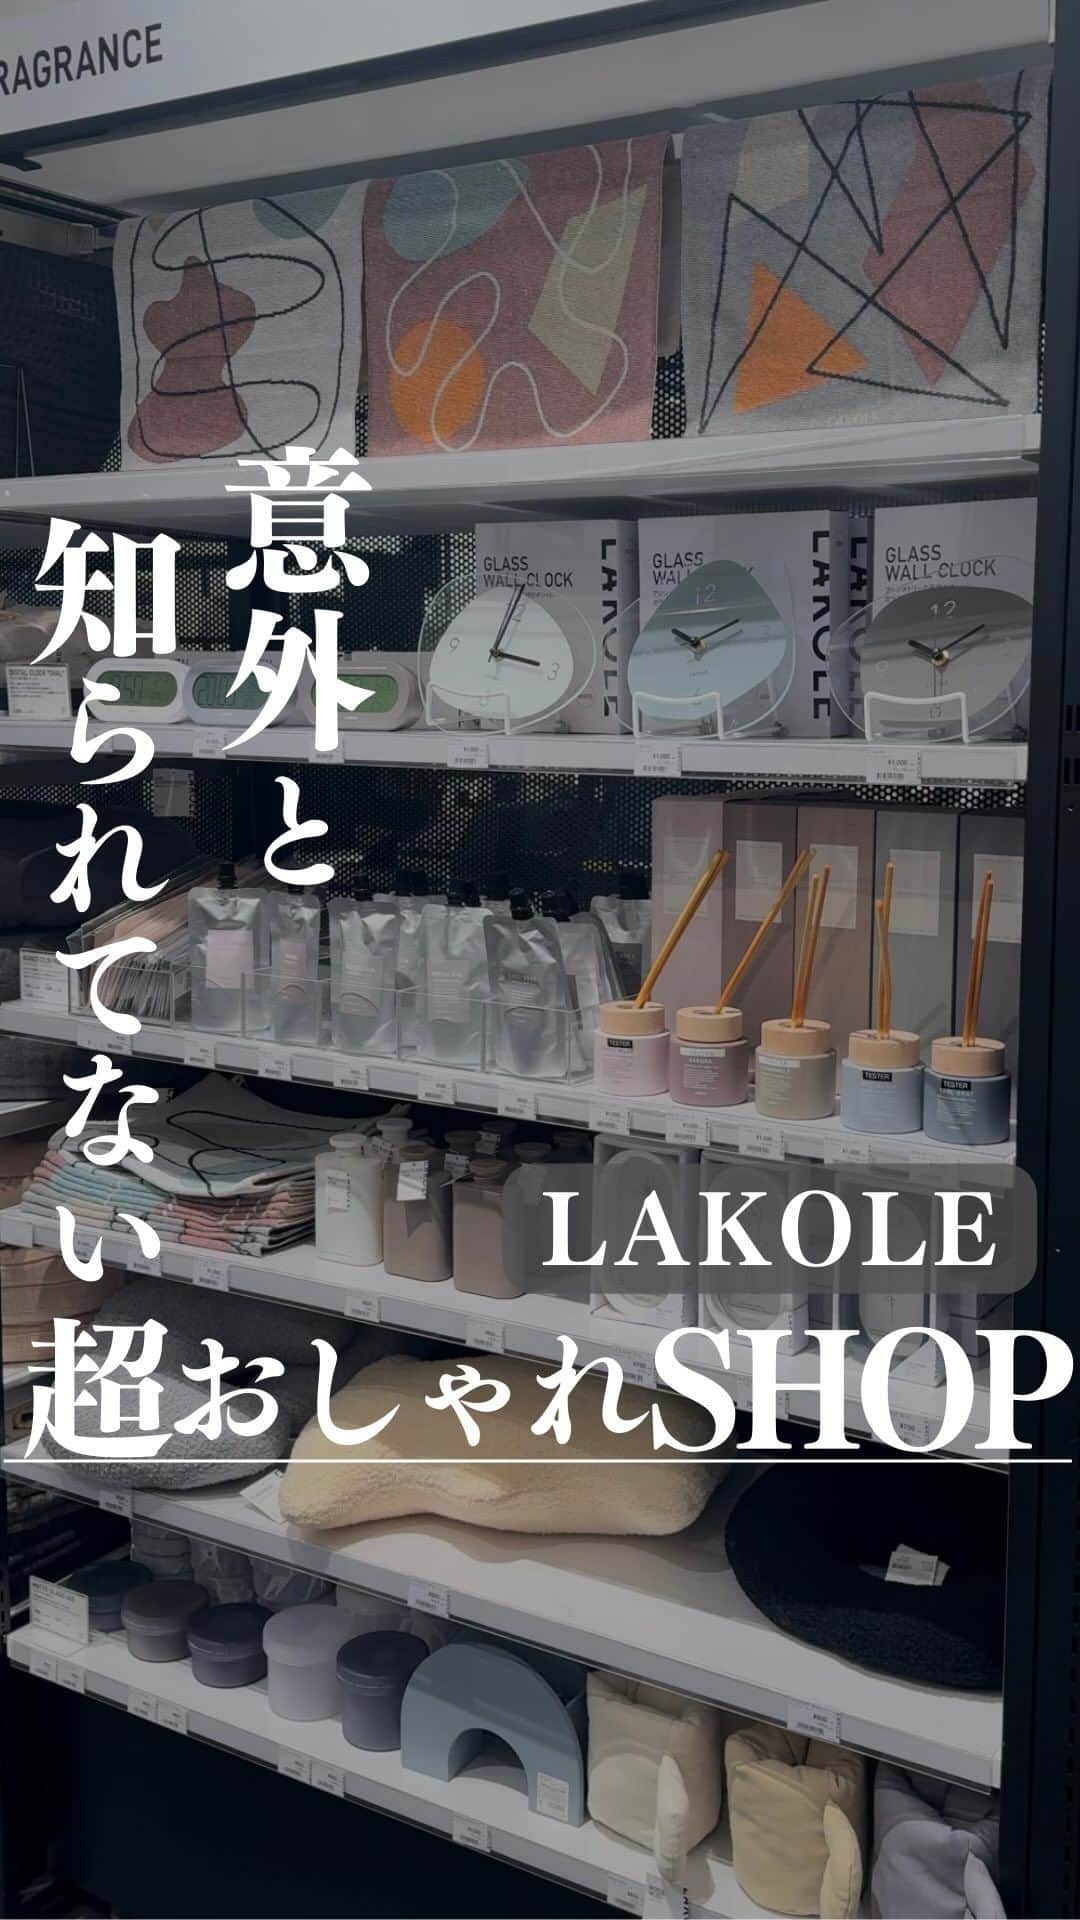 LAKOLE / ラコレのインスタグラム：「↓商品の値段など詳細は下記に！#  LAKOLE（@lakole_official）初めて行ったんですが、好みのアイテムありすぎてめっちゃ悩みました😳  アパレルも可愛いの何着もあったし、絶対定期的に行きます🔥🙋  ◼︎店舗詳細 僕が行ったのはLAKOLEトレッサ横浜店です！  ◼︎商品詳細 ・お皿 ゆるっとスタックボウル（S）660円  ・スツール ヘキサゴンスツール　1,100円  ・ディフューザー BASEディフューザー　1,100円  ・ハンドウォーマー 2,750円  こちらの投稿は、TIROさん( @tttttttttro_ )とLAKOLEの共同投稿です。  ————————————————————— このアカウントでは、同棲の暮らし・インテリアについて発信しています。  投稿が参考になったり共感していただけたらいいね・コメント・フォロー・保存していただけますとモチベになります🔥  ぜひ他の投稿(@ttttttttttro_)も見てみてください🕊  #二人暮らし #同棲 #ライフハック #暮らし #同棲カップル #インテリア #同棲インテリア #雑貨屋 #LAKOLE #ドットエスティ #アパレル #おしゃれショップ #おしゃれ雑貨屋 #おしゃれインテリア #インテリアショップ #インテリアショップ紹介 #雑貨屋紹介 #pr #lakolepr #ラコレ #あたりまえを素敵に」